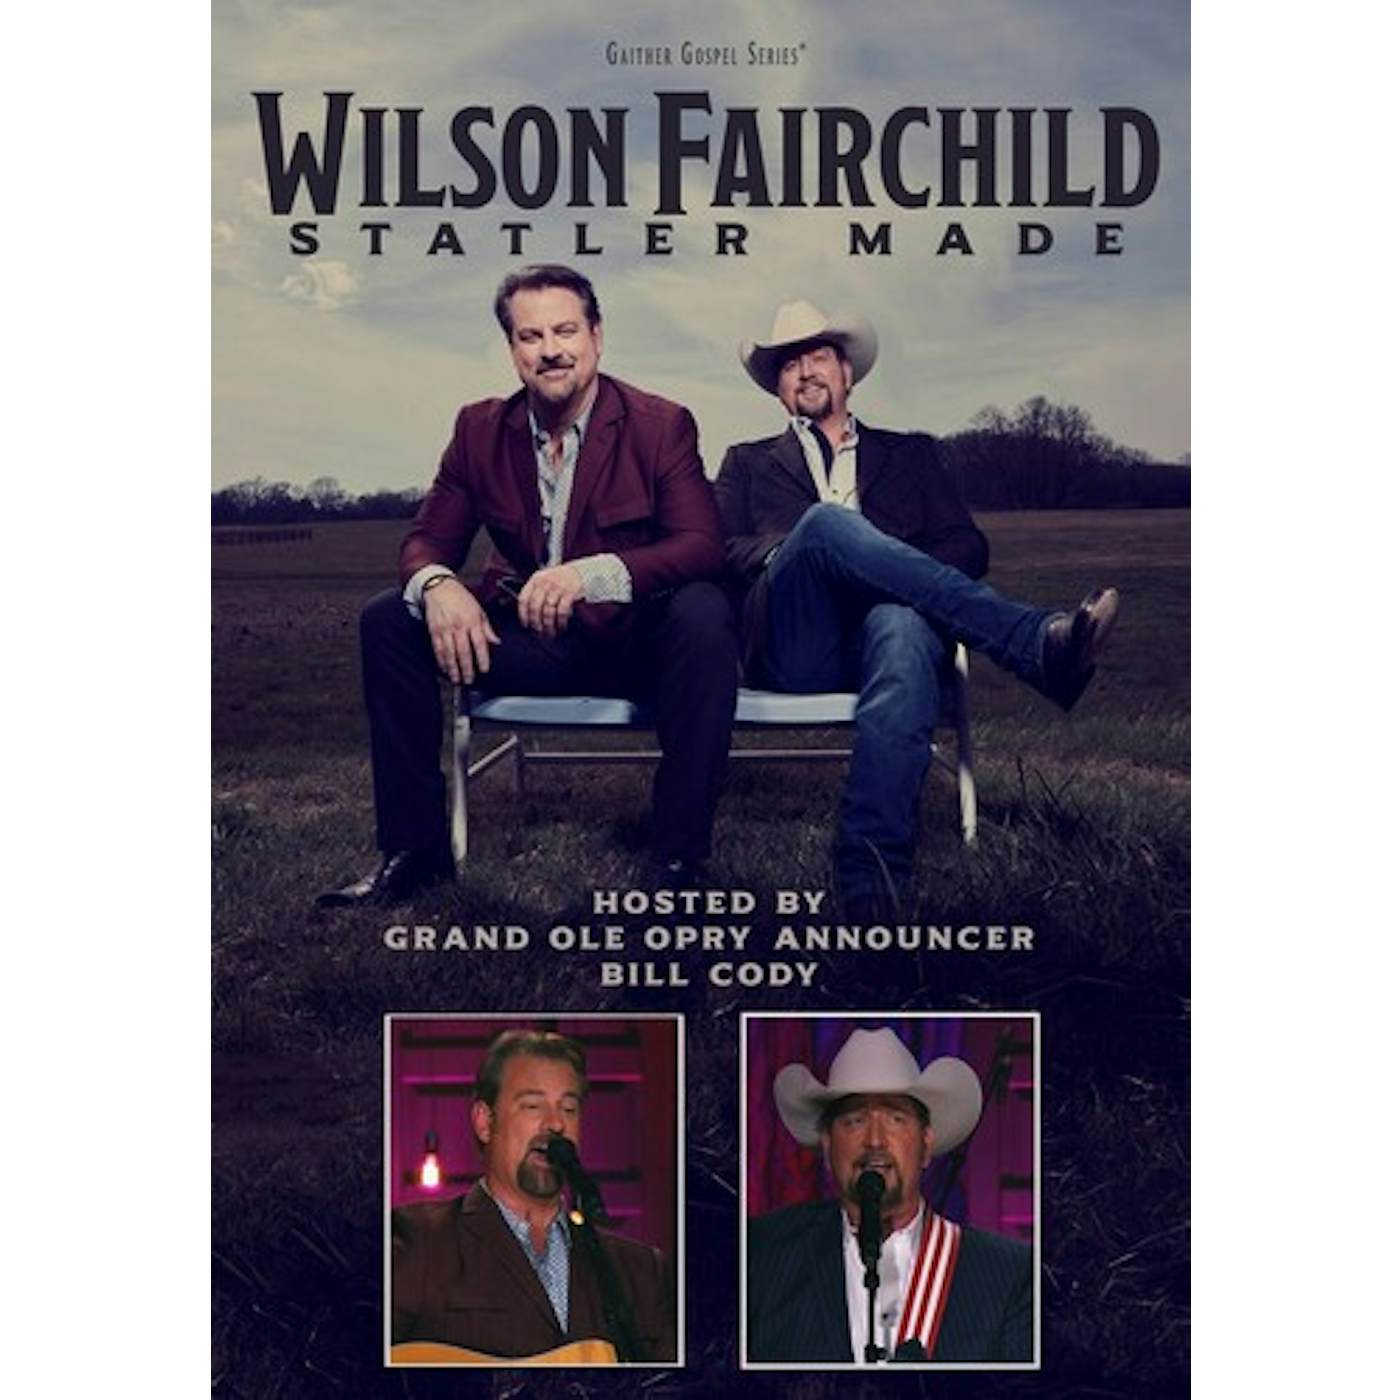 Wilson Fairchild STATLER MADE DVD